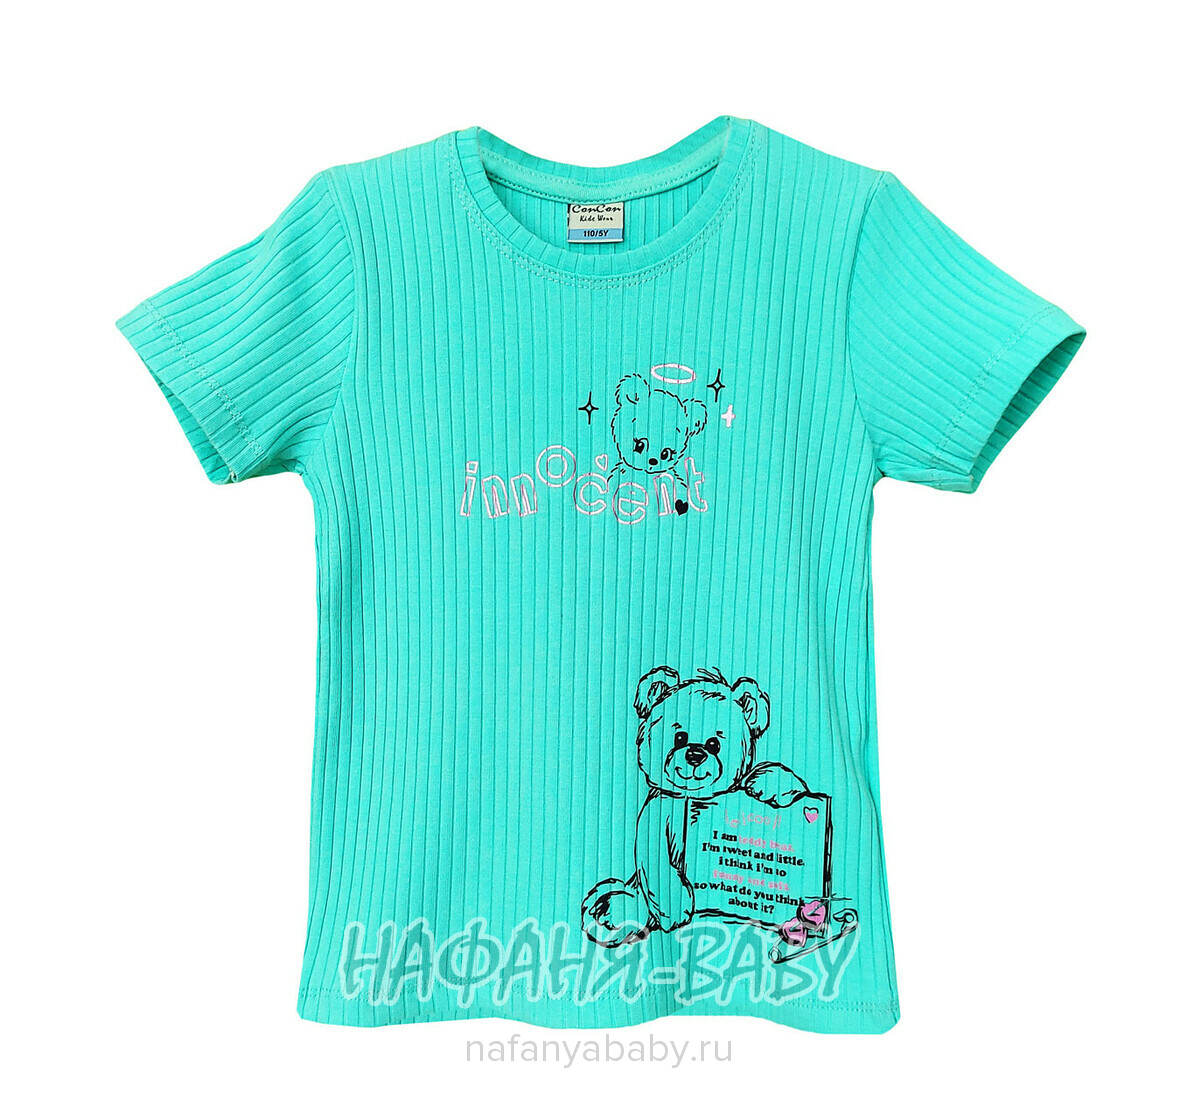 Детская футболка Con Con арт. 16371 для девочки 2-6 лет, цвет бирюзовый, оптом Турция